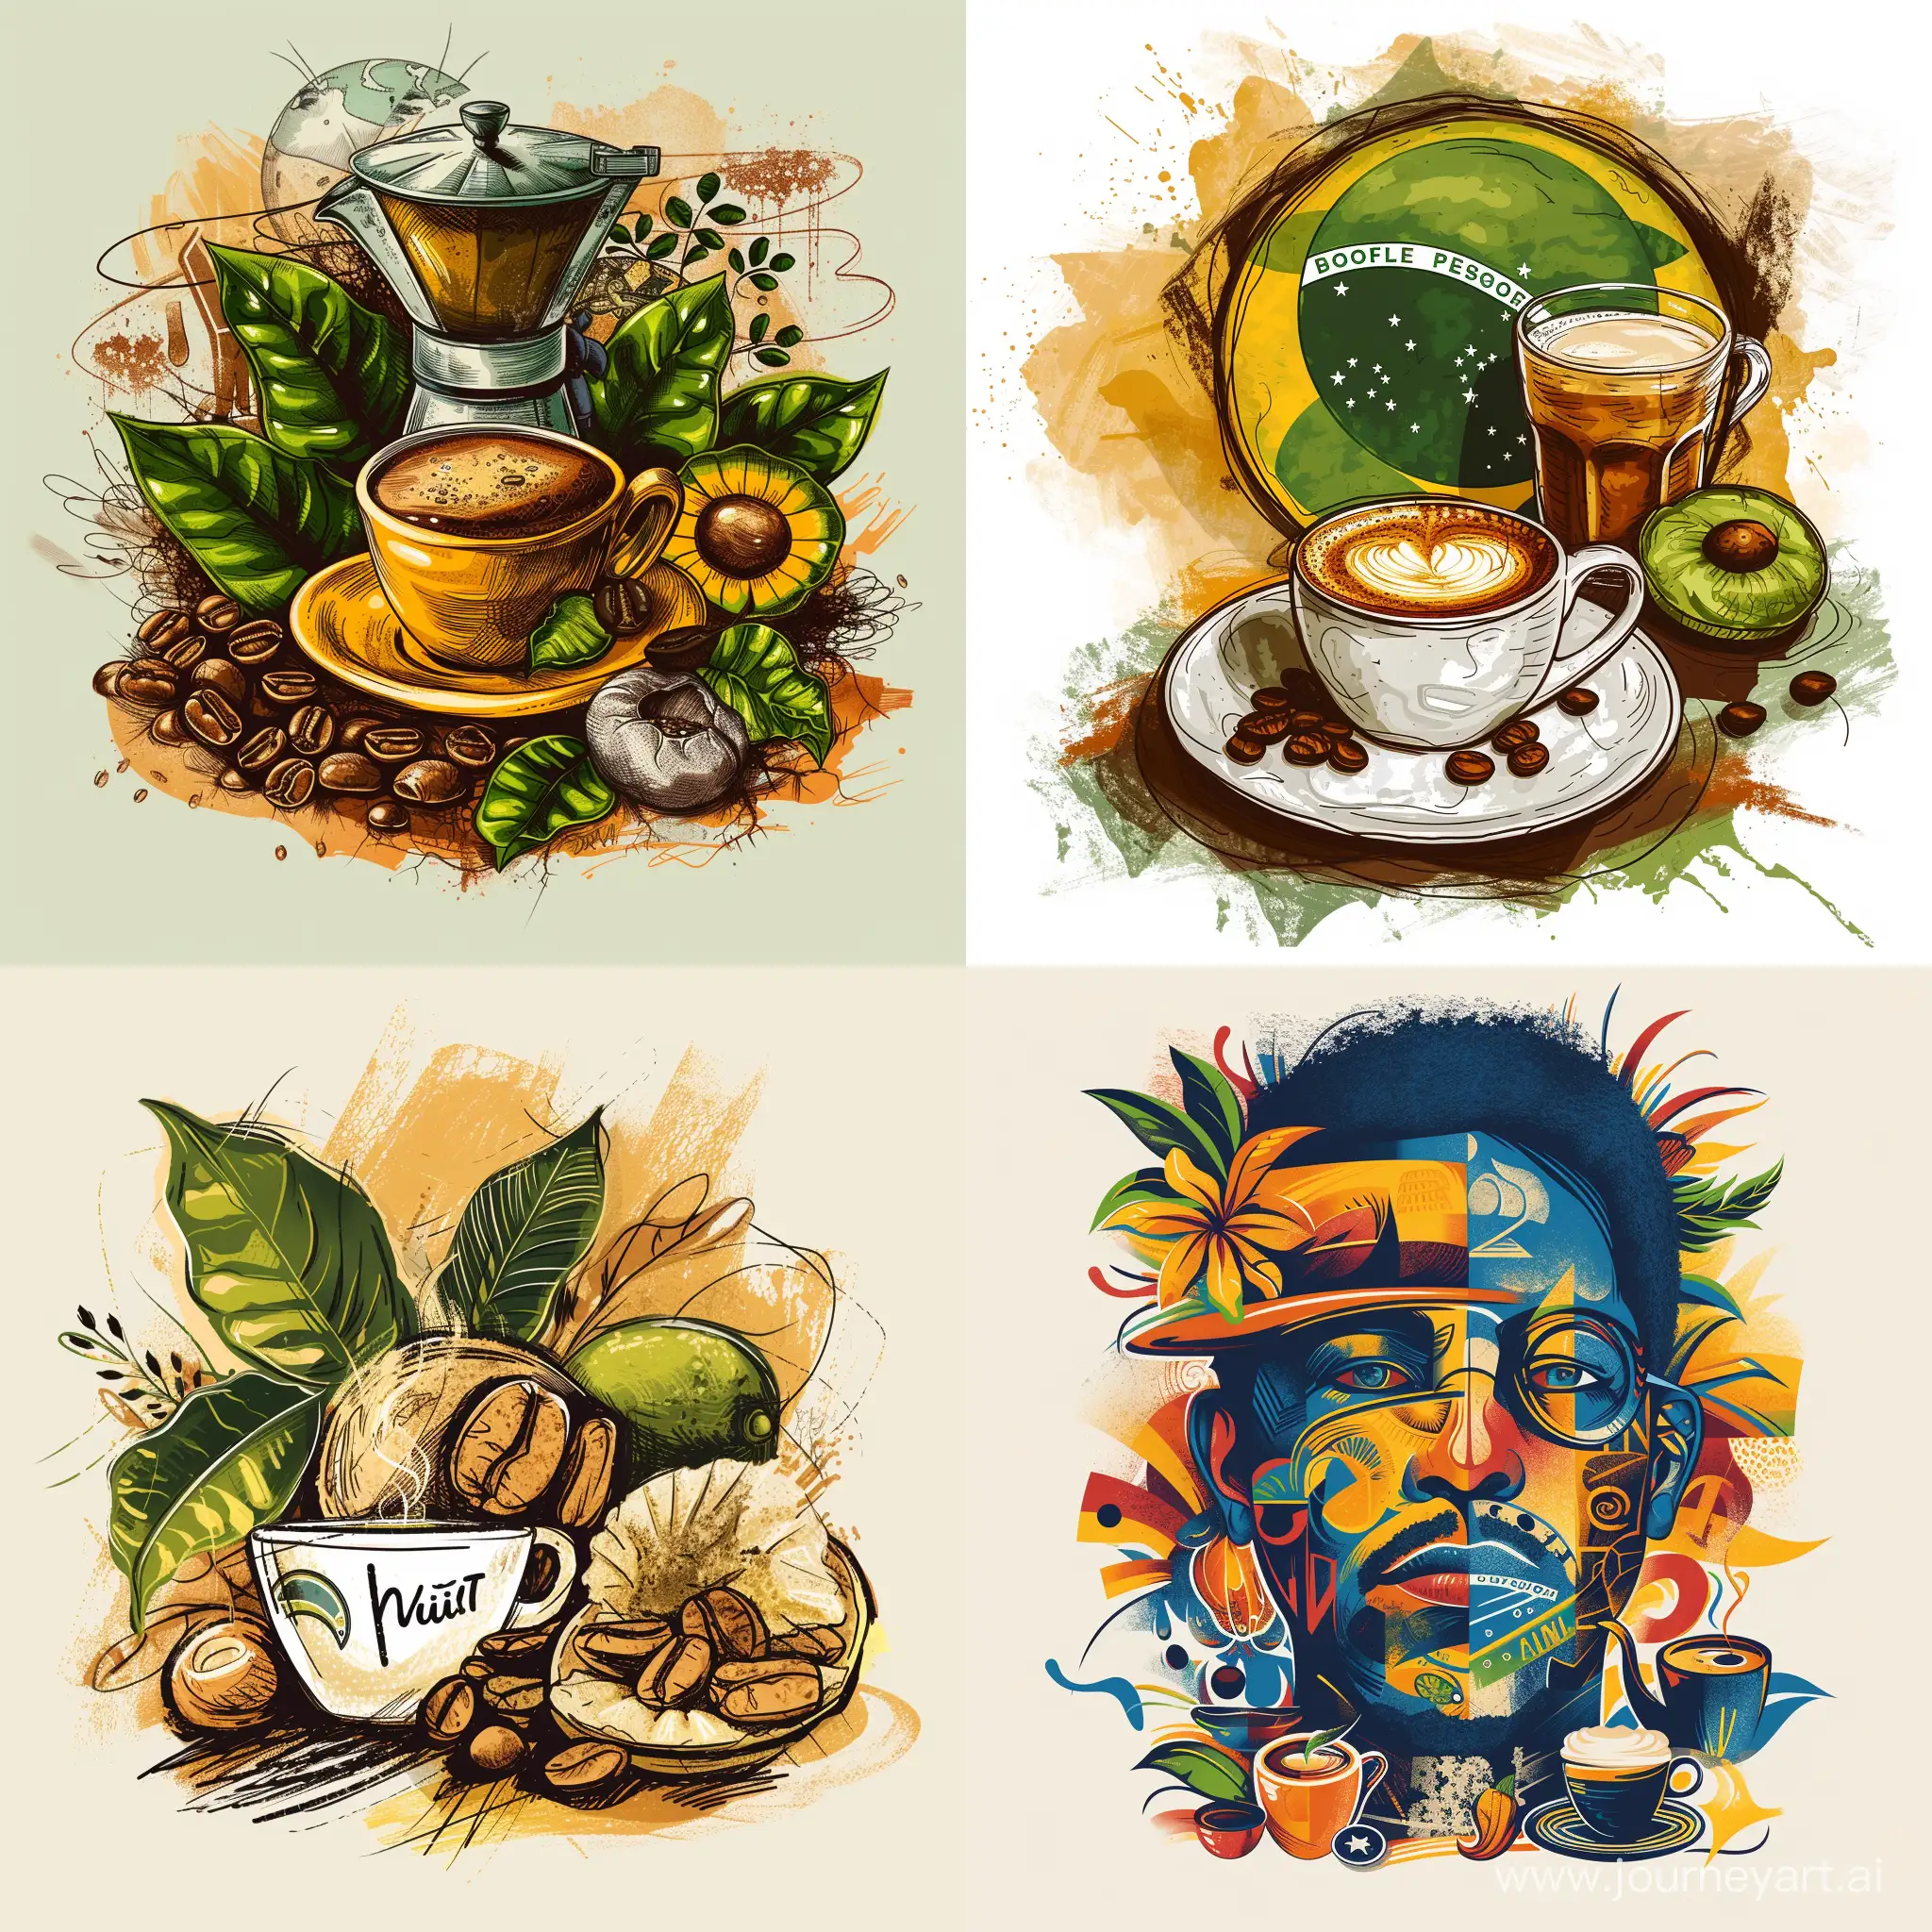 иллюстрация нарисованная кистями в  Photoshop из символов Бразилии и кофе.